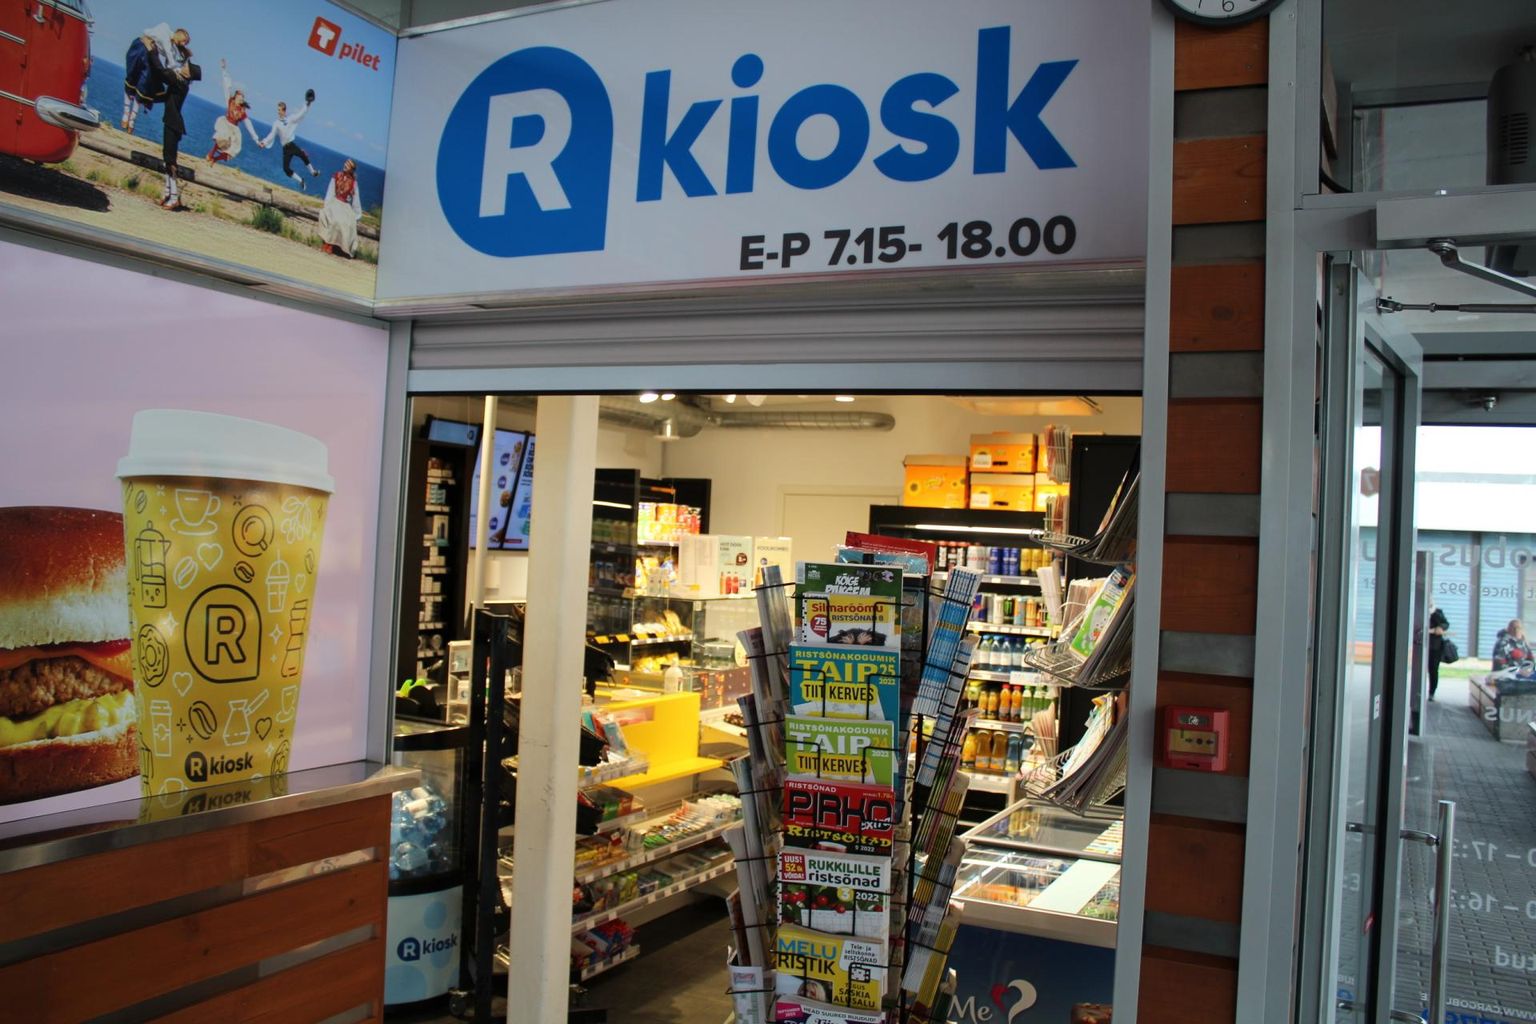 R-kiosk Rakvere bussijaamas, kust osteti rekordilise võidu toonud Bingo loto pilet.